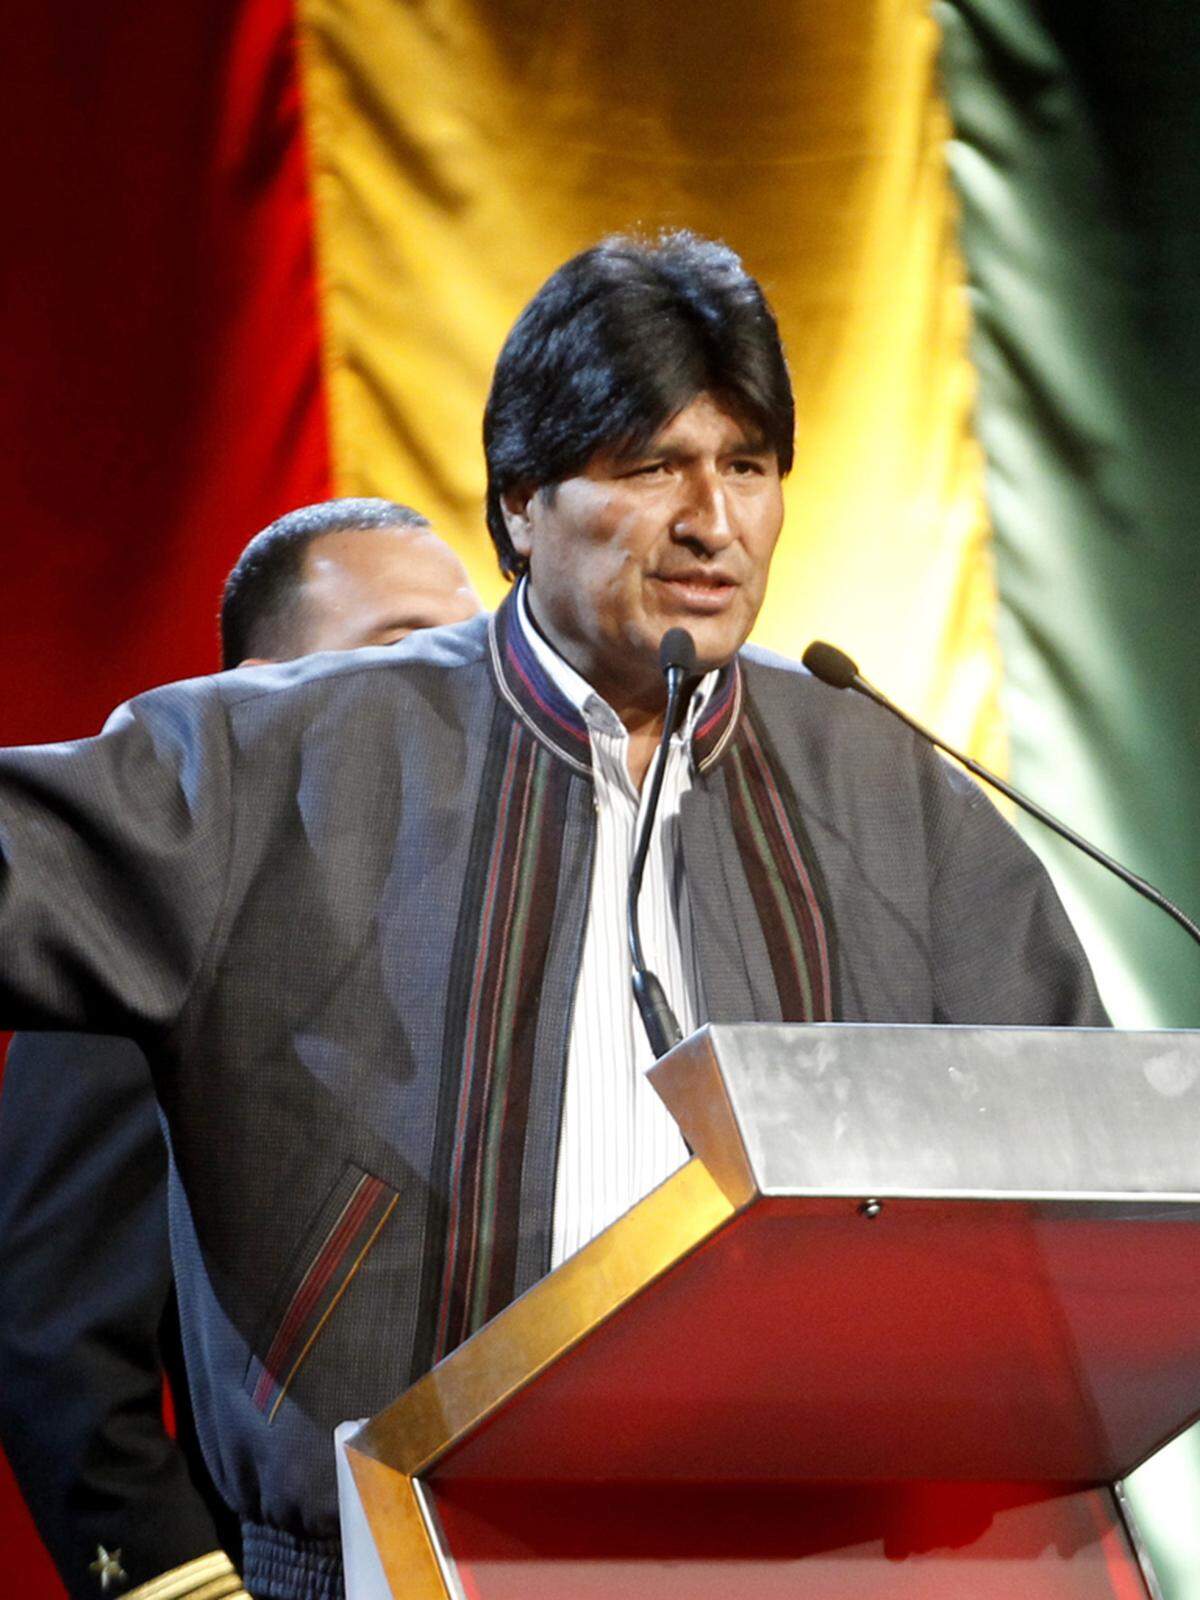 Boliviens seit 2006 amtierender Präsident Evo Morales sieht sich als Kämpfer für die benachteiligte Indio-Mehrheit und verstaatlichte Teile der Öl- und Erdgasindustrie. Der 53-Jährige ließ zudem Land von Großgrundbesitzern an arme Bauern verteilen.